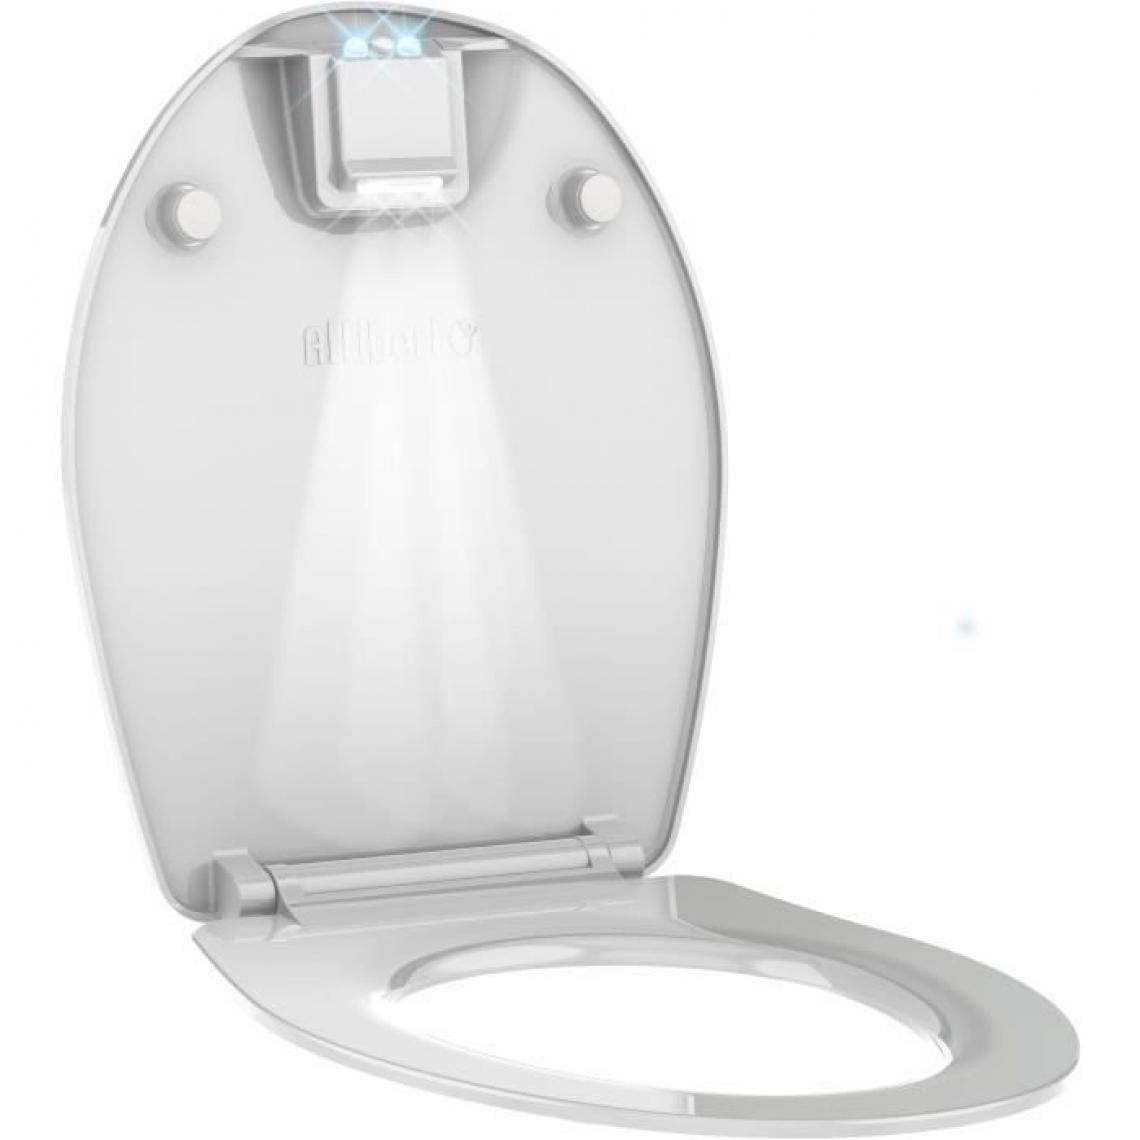 Icaverne - ABATTANT WC - REHAUSSEUR WC ALLIBERT Abattant de toilette a fermeture silencieuse Nighty 2 - Blanc brillant - Abattant WC